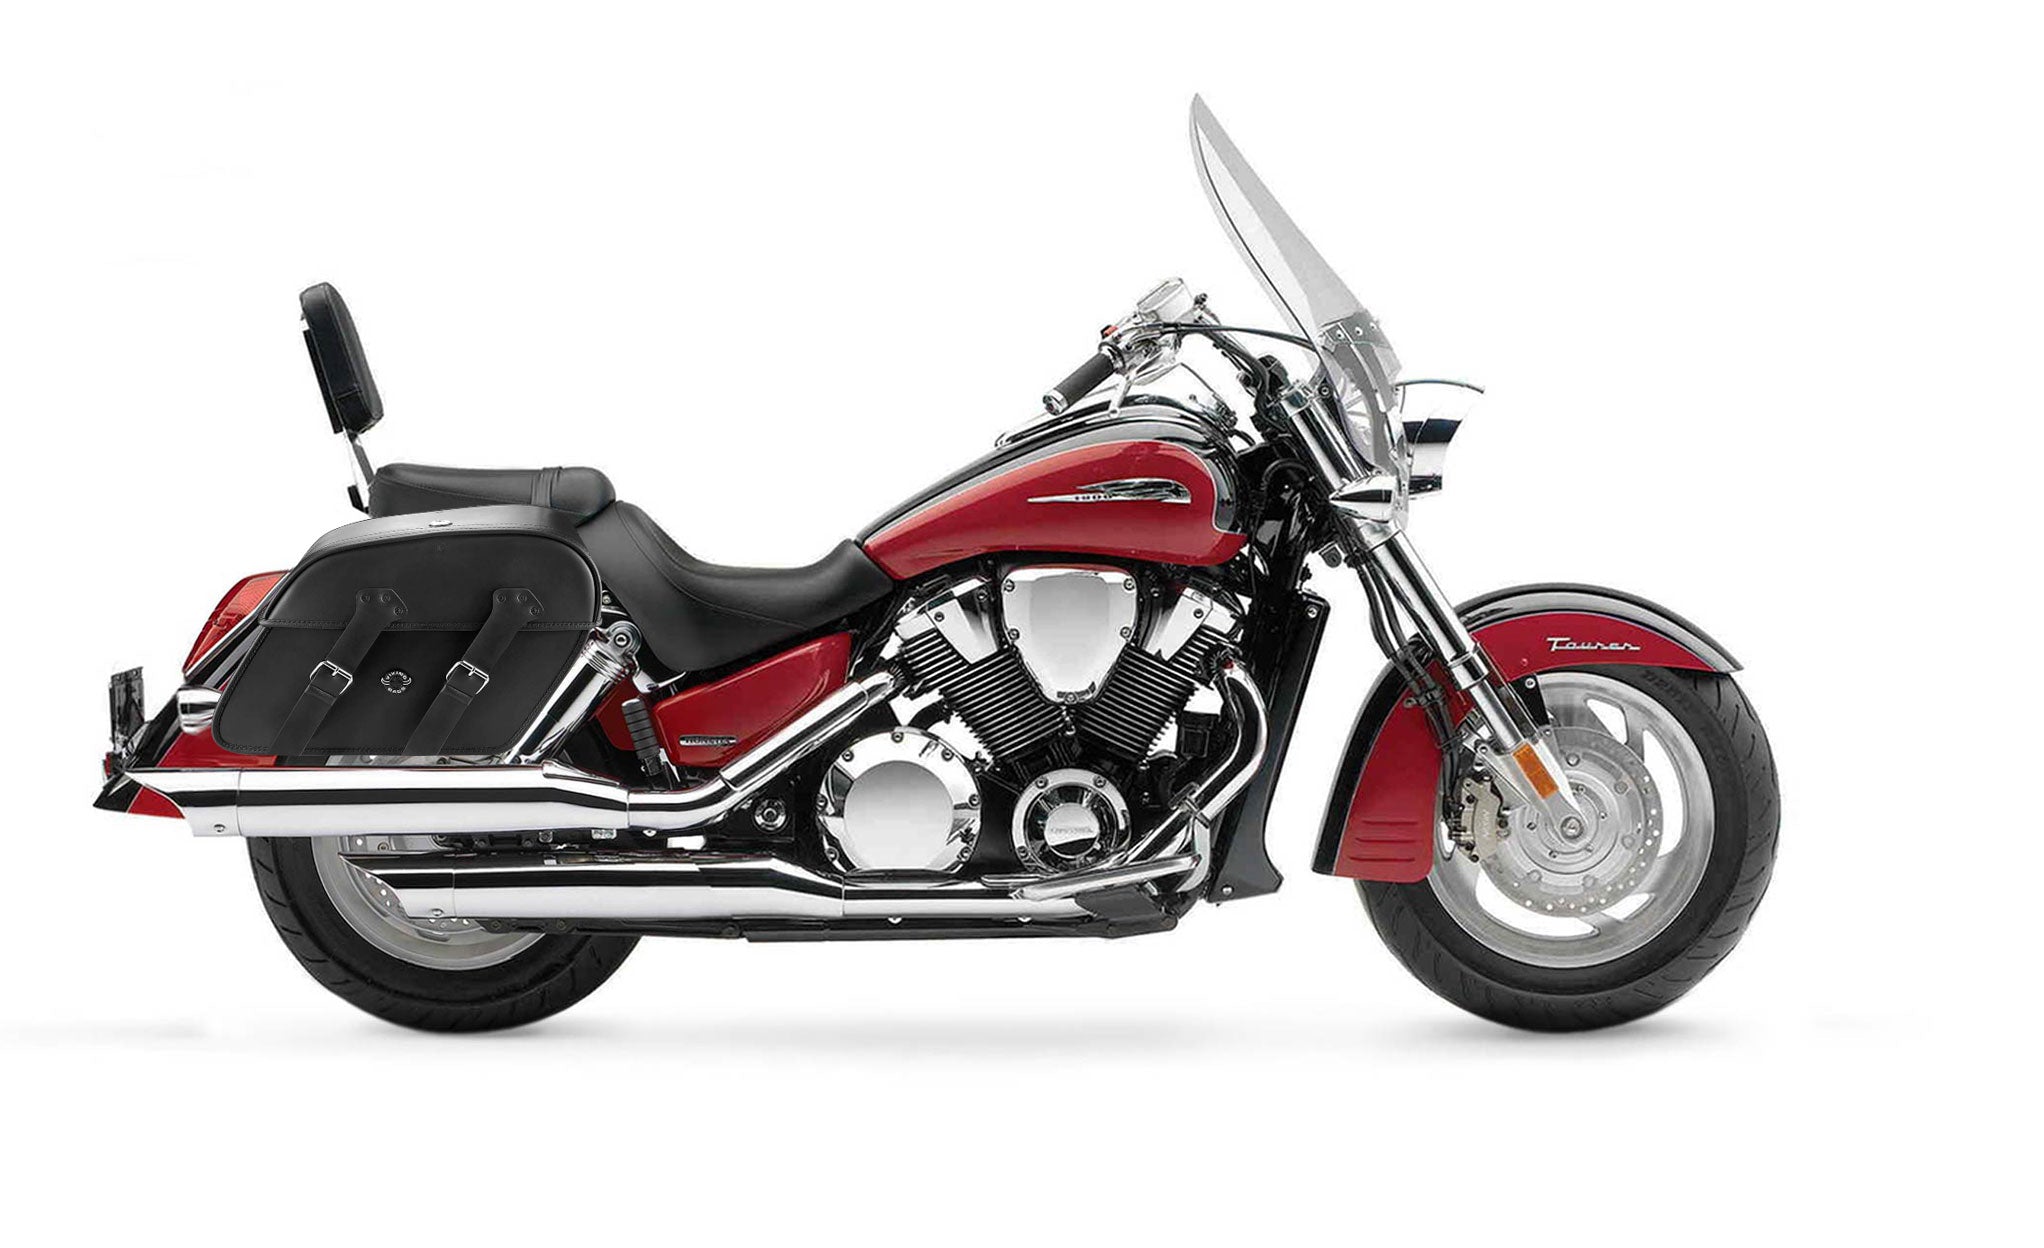 Viking Raven Extra Large Honda Vtx 1800 T Tourer Leather Motorcycle Saddlebags on Bike Photo @expand